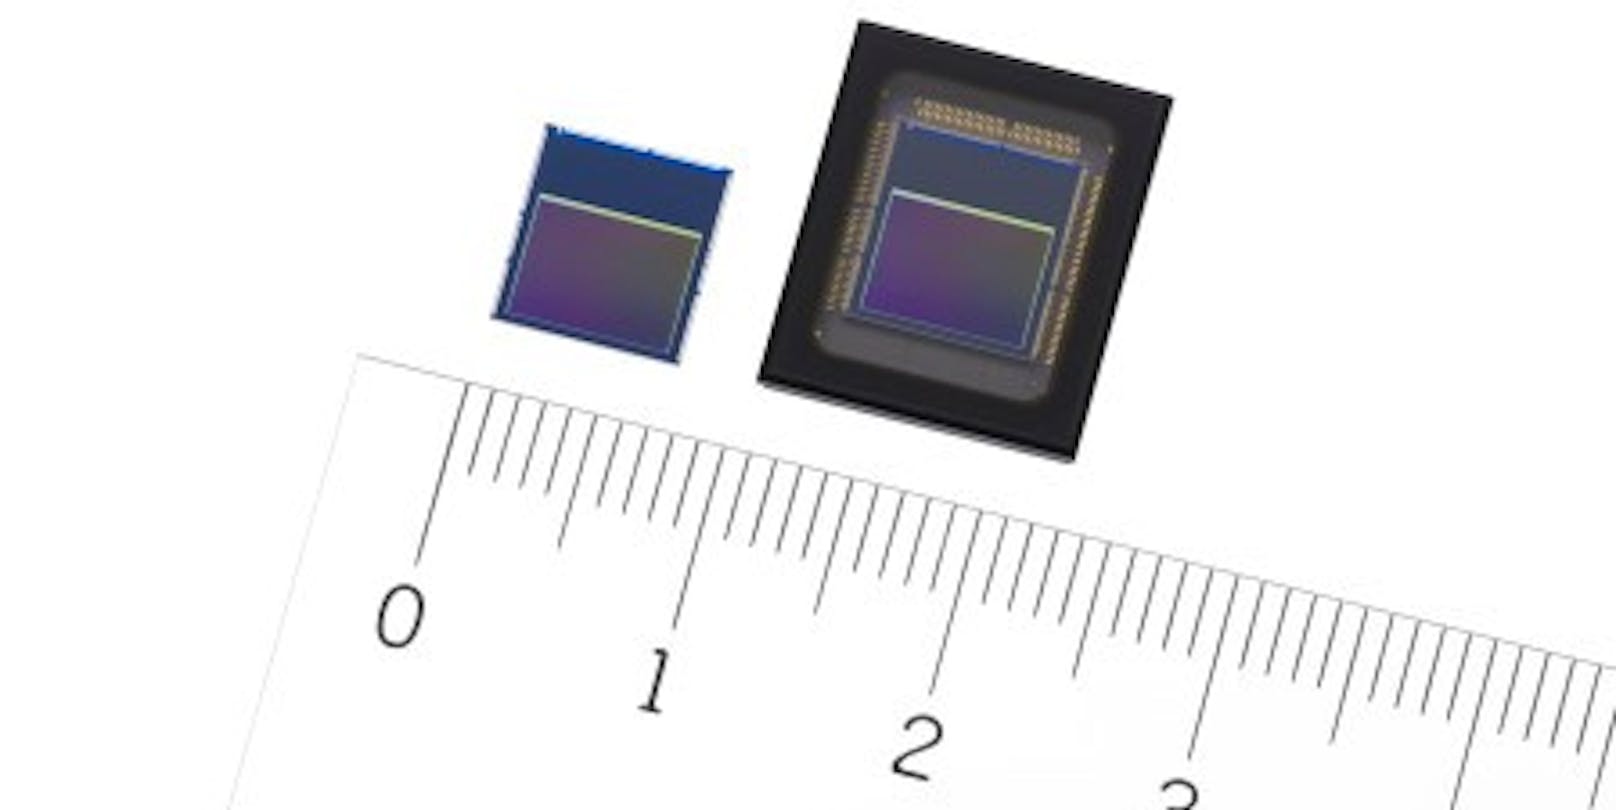 Sony bringt die weltweit ersten Intelligent Vision Sensors mit KI-Verarbeitung auf den Markt.